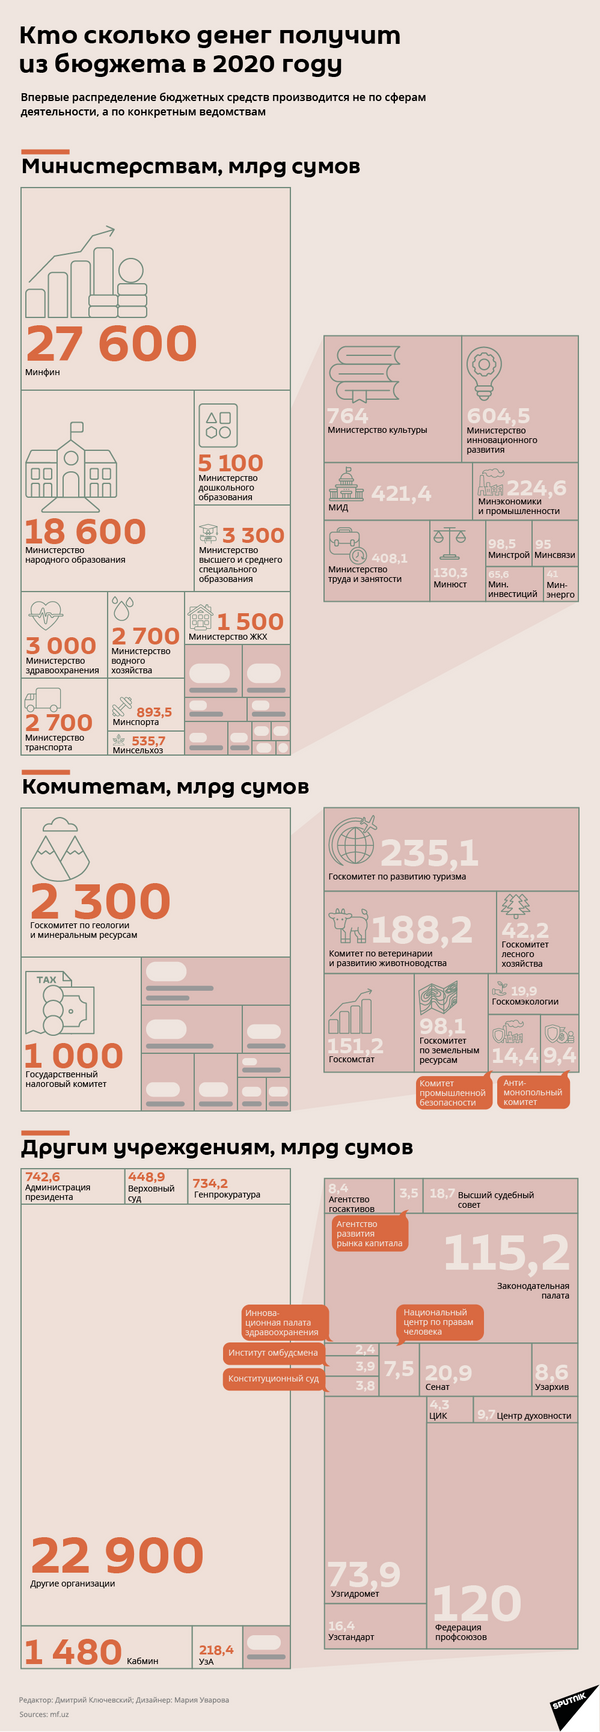 Кто сколько денег получит из бюджета в 2020 году - Sputnik Узбекистан